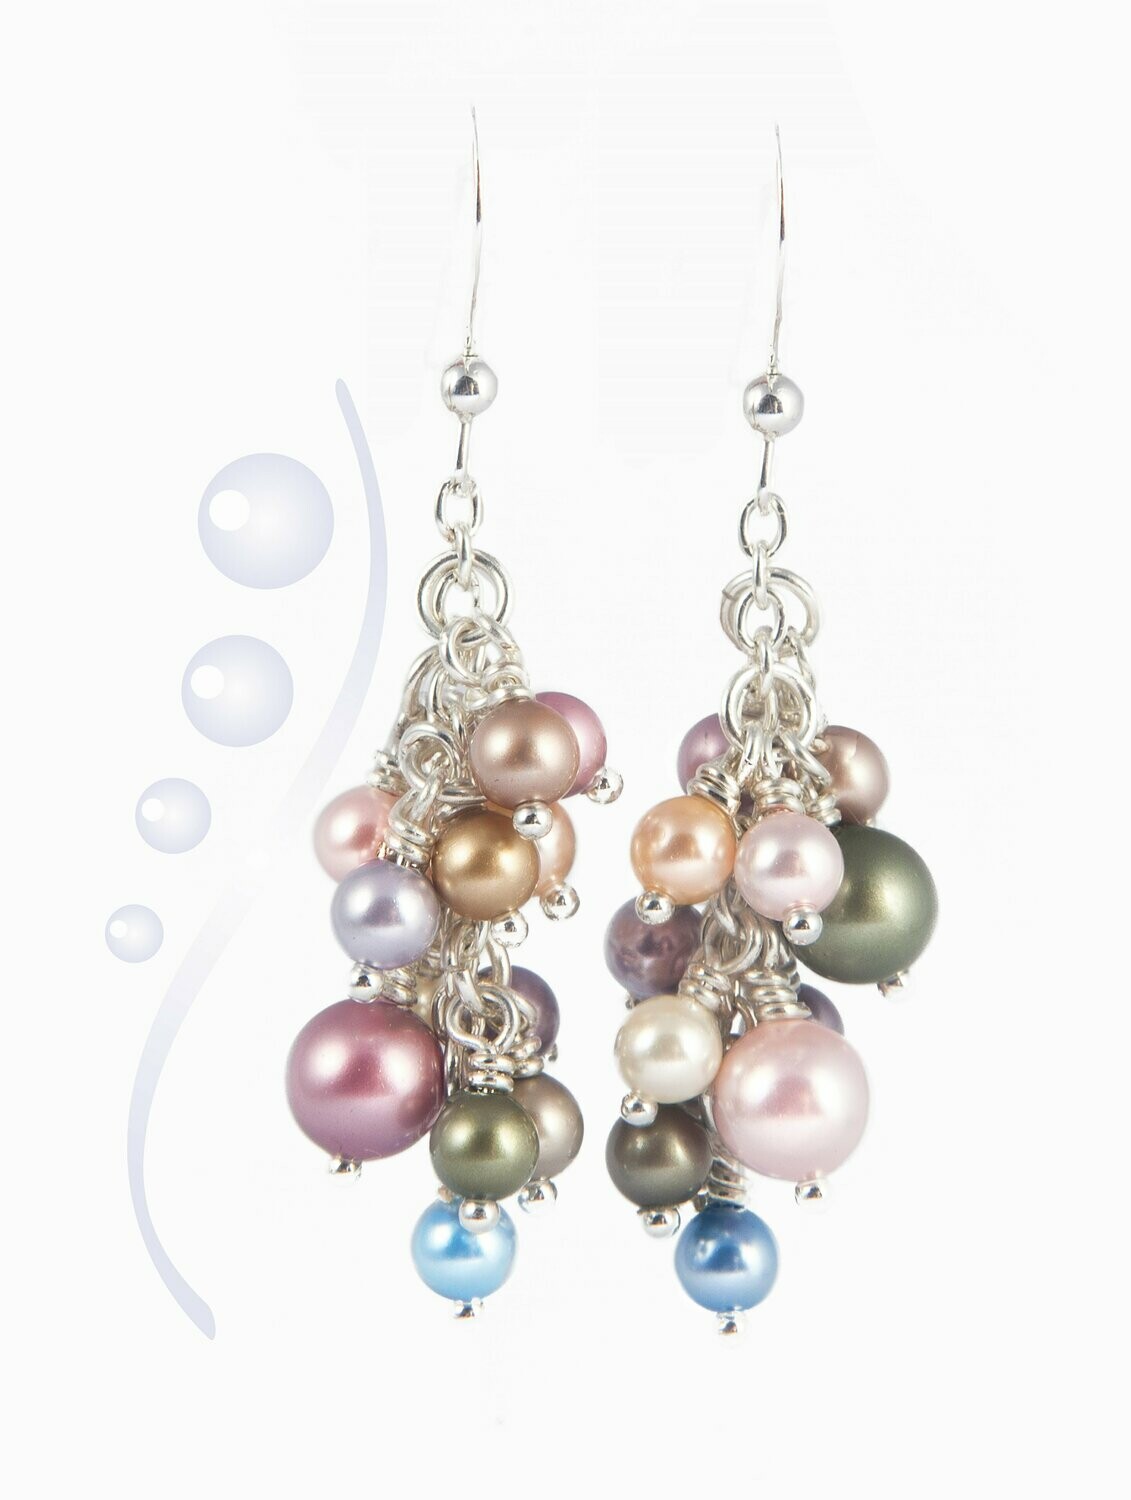 Pastel pearl earrings with Swarovski pearls